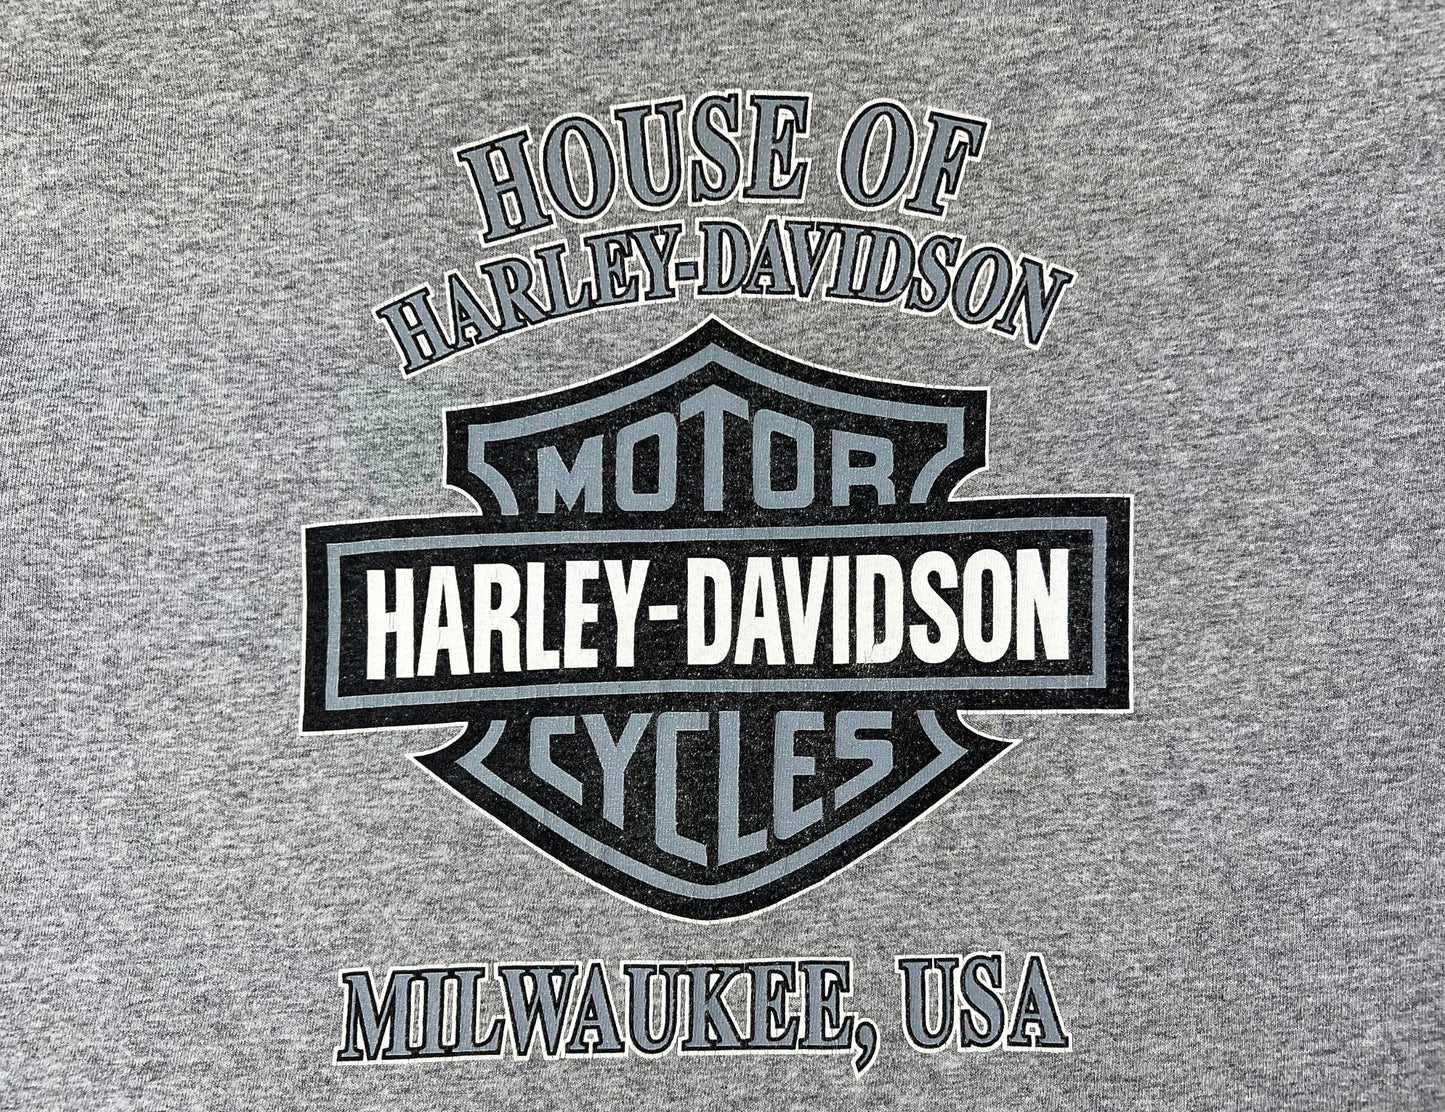 2000 Harley Davidson House of Harley Bald Eagle Pocket Tshirt Size L/XL